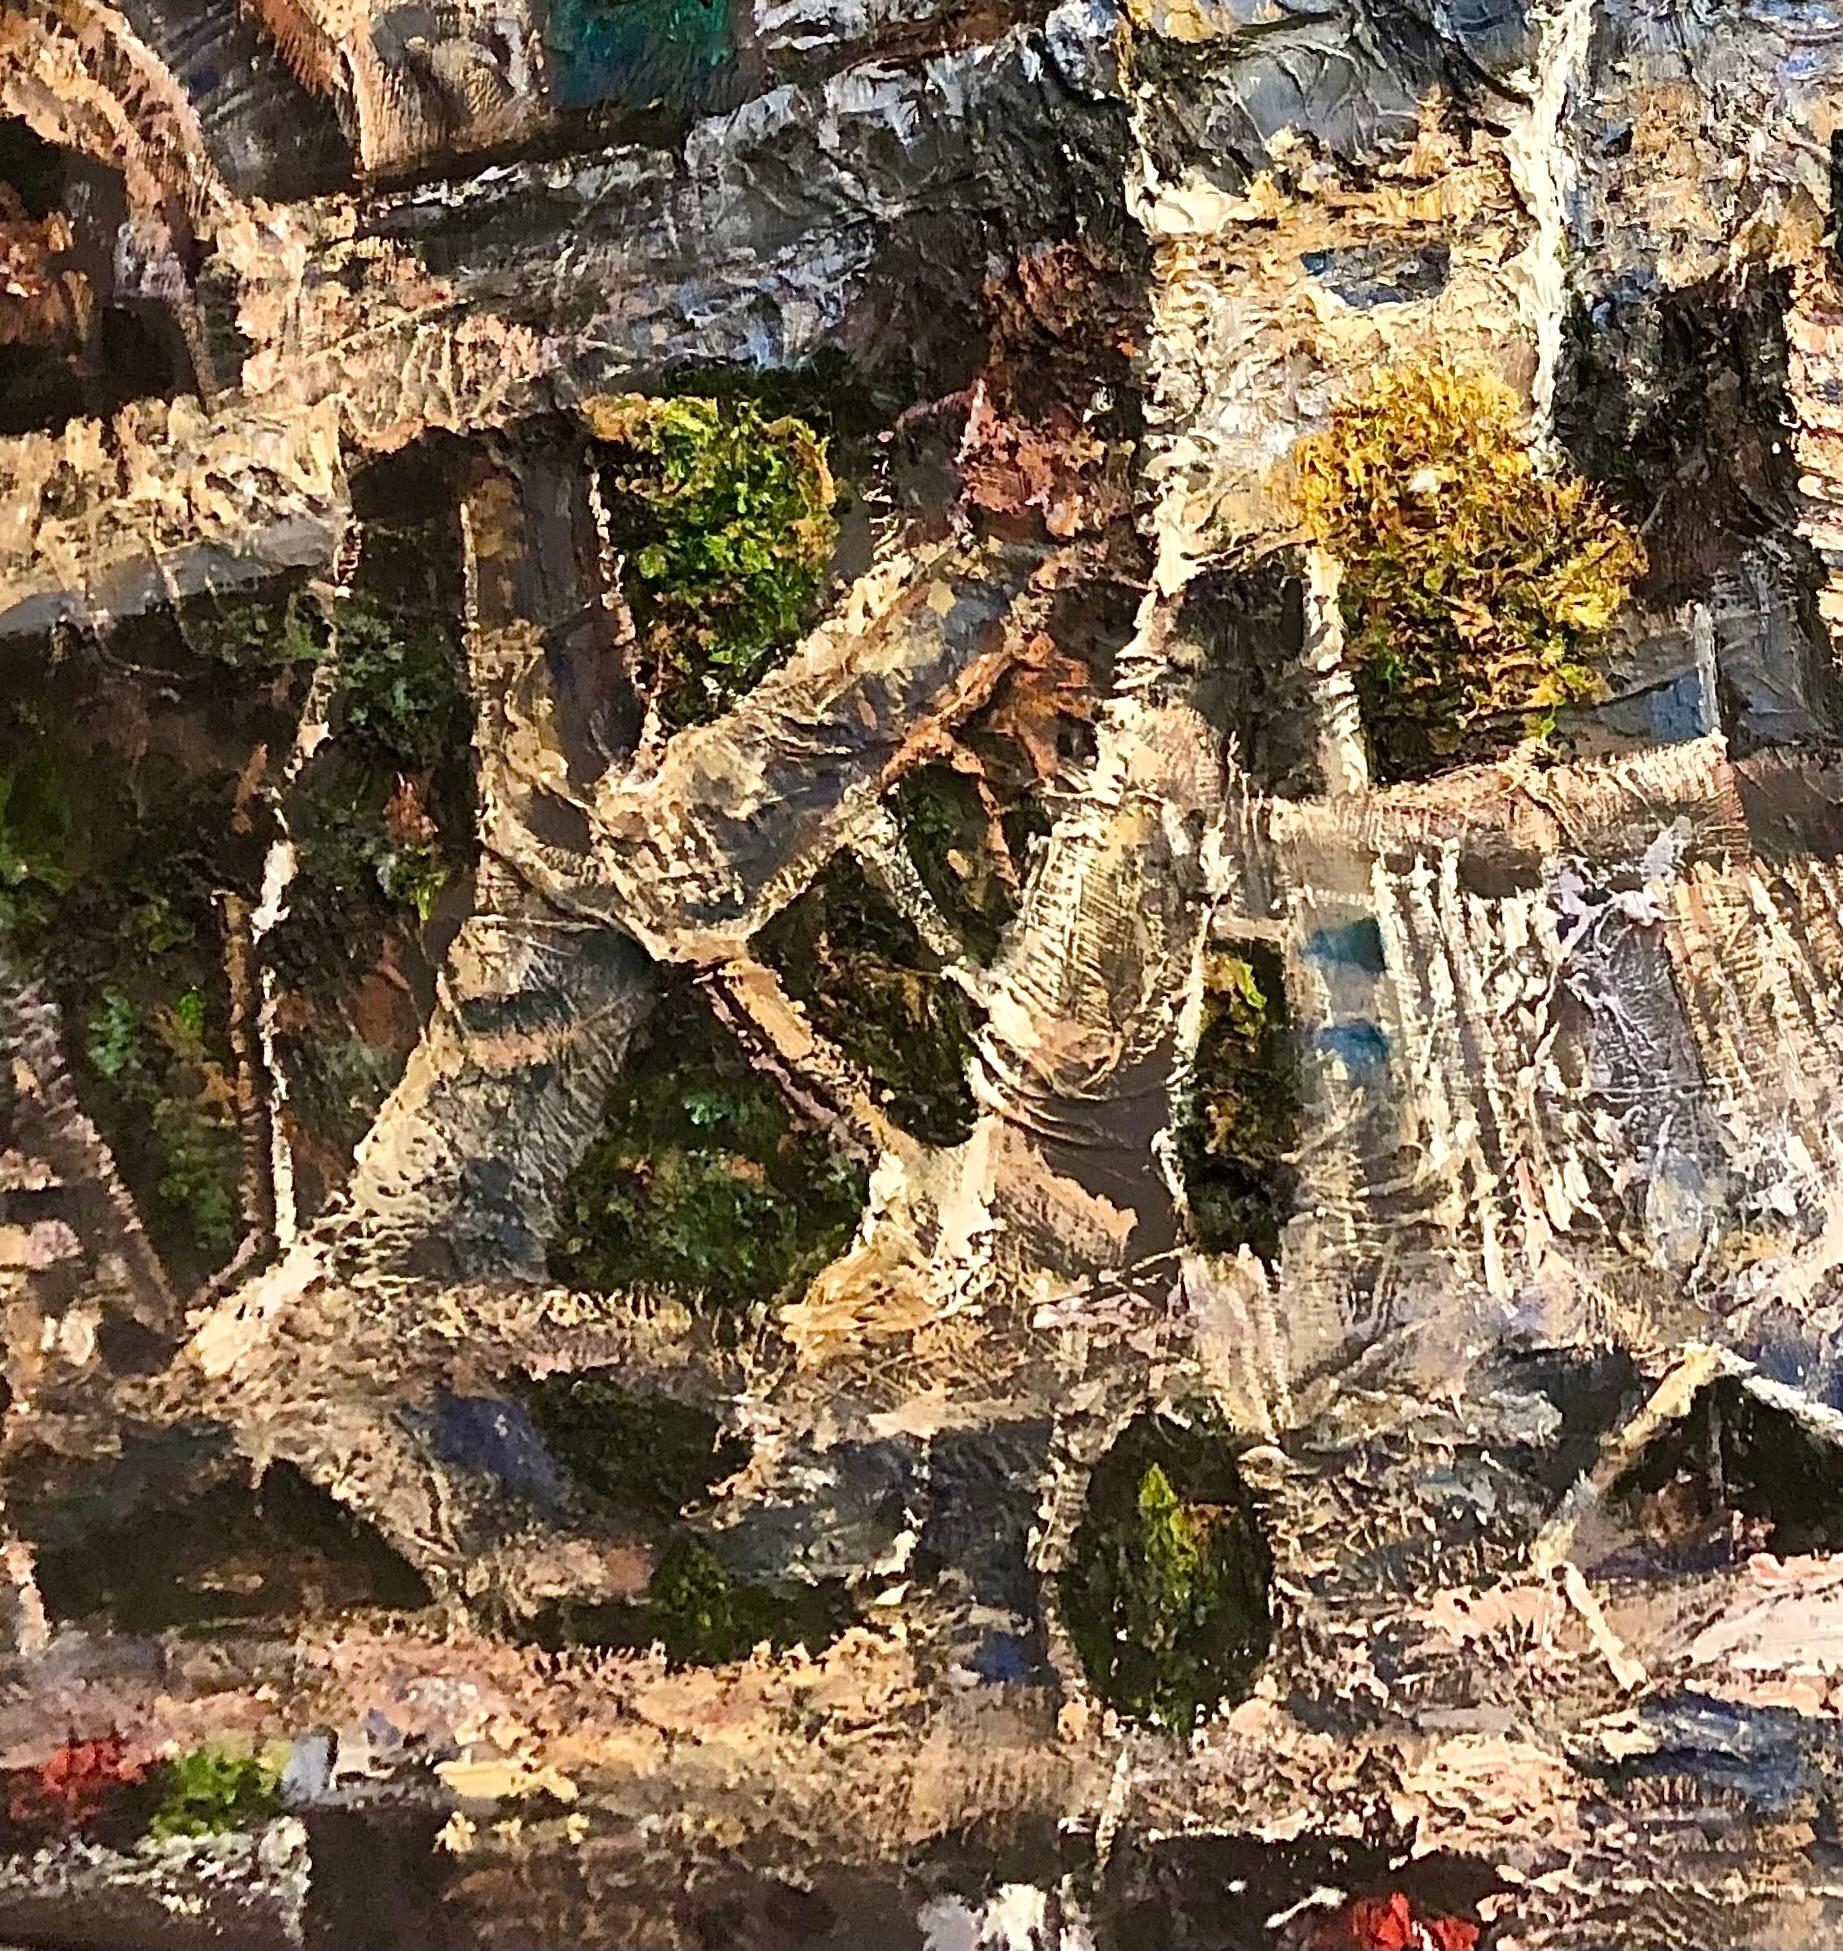 Atemberaubendes abstraktes Luftbild des ungarischen Künstlers Levente Baranyai. Öl auf Tafel, 37,5 x 50 Zoll.

Levente Baranyai konzentriert sich auf städtische und ländliche Landschaften aus der Vogelperspektive. Seine Kompositionen sind